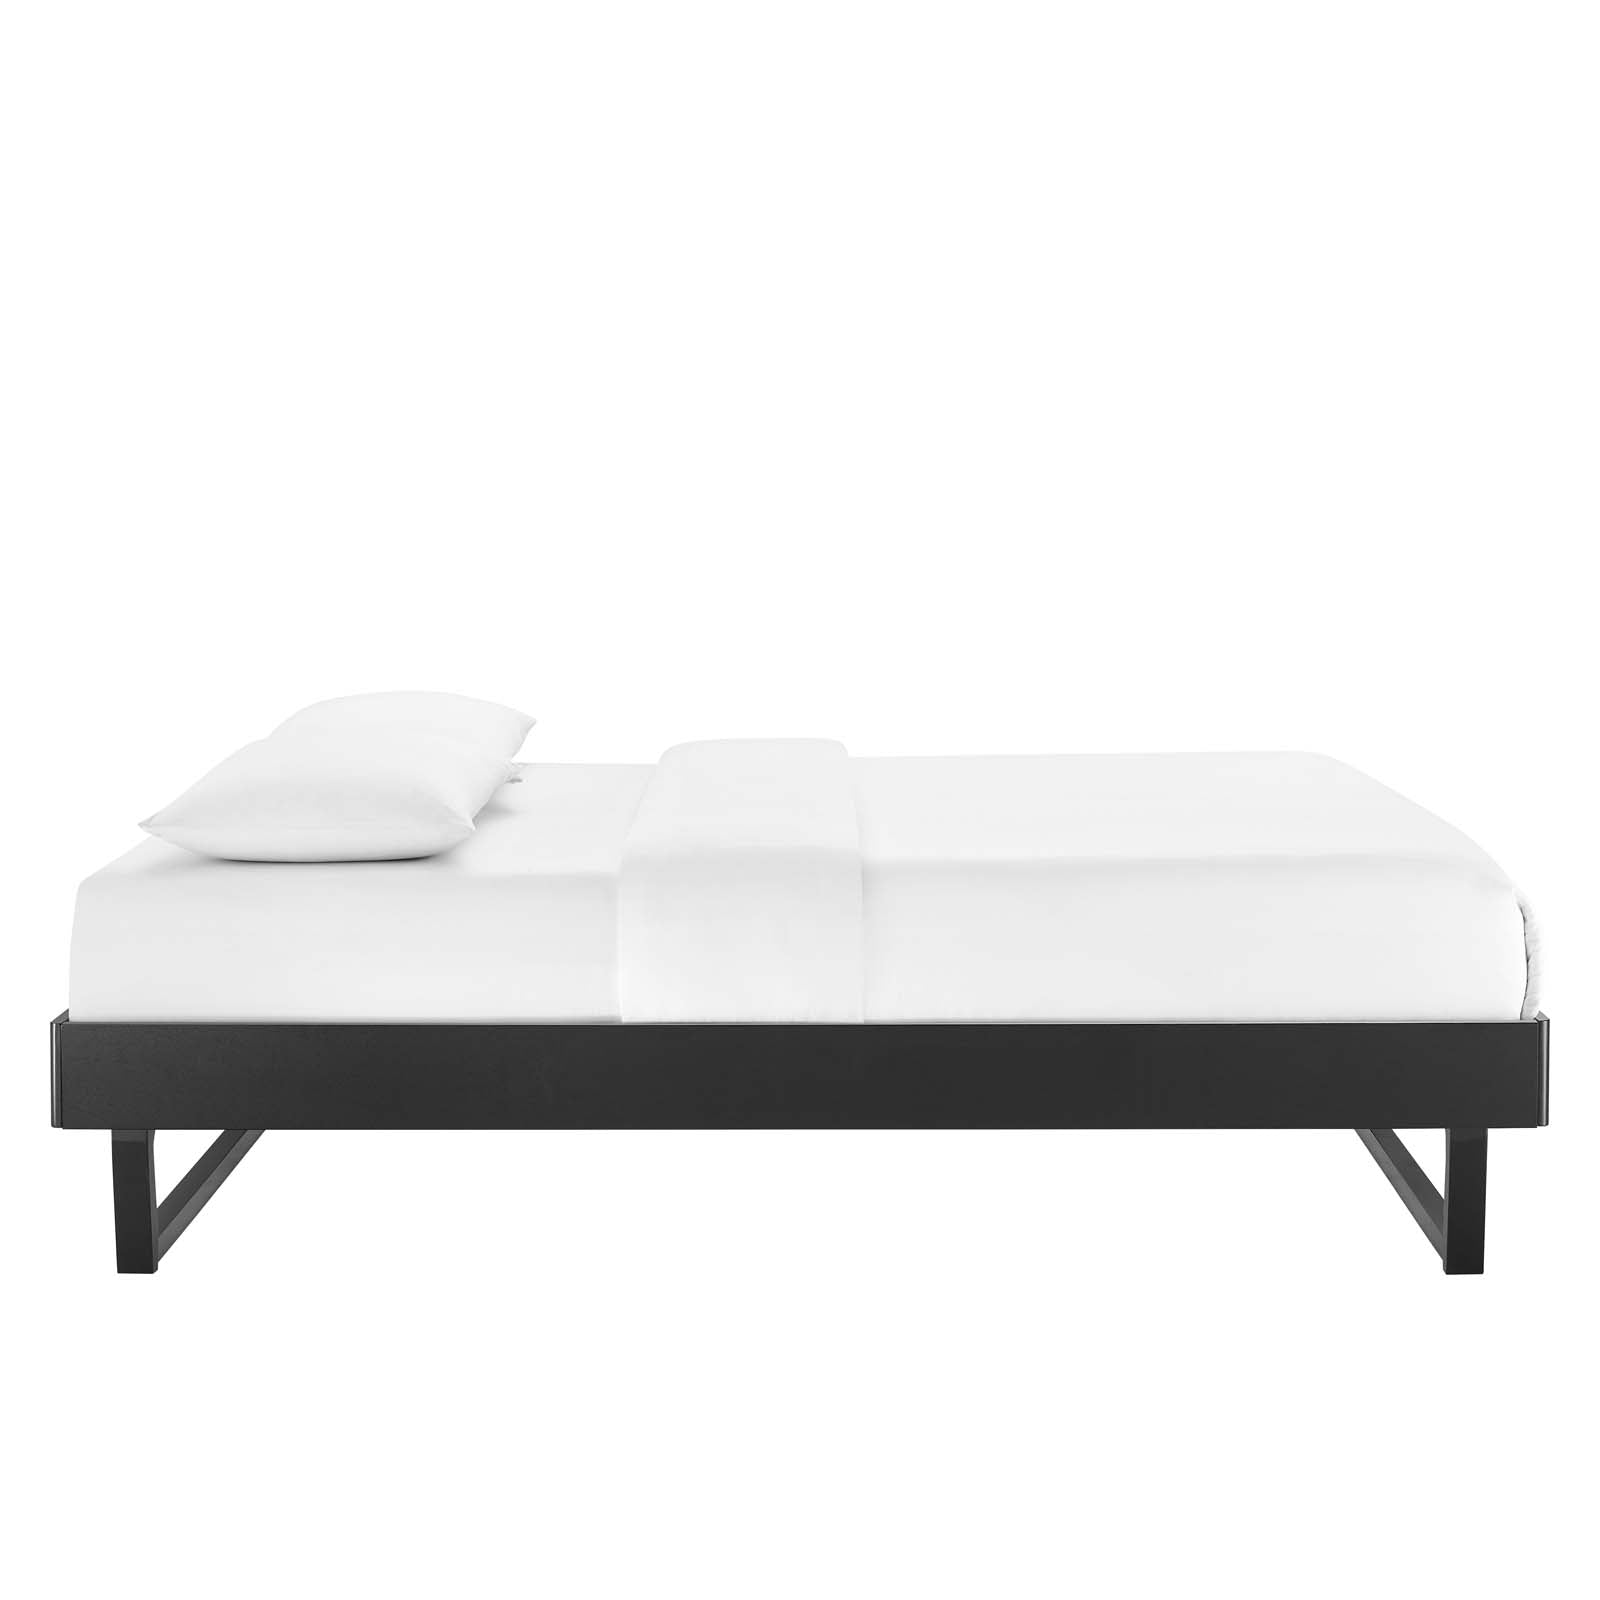 Modway Beds - Billie King Wood Platform Bed Frame Black